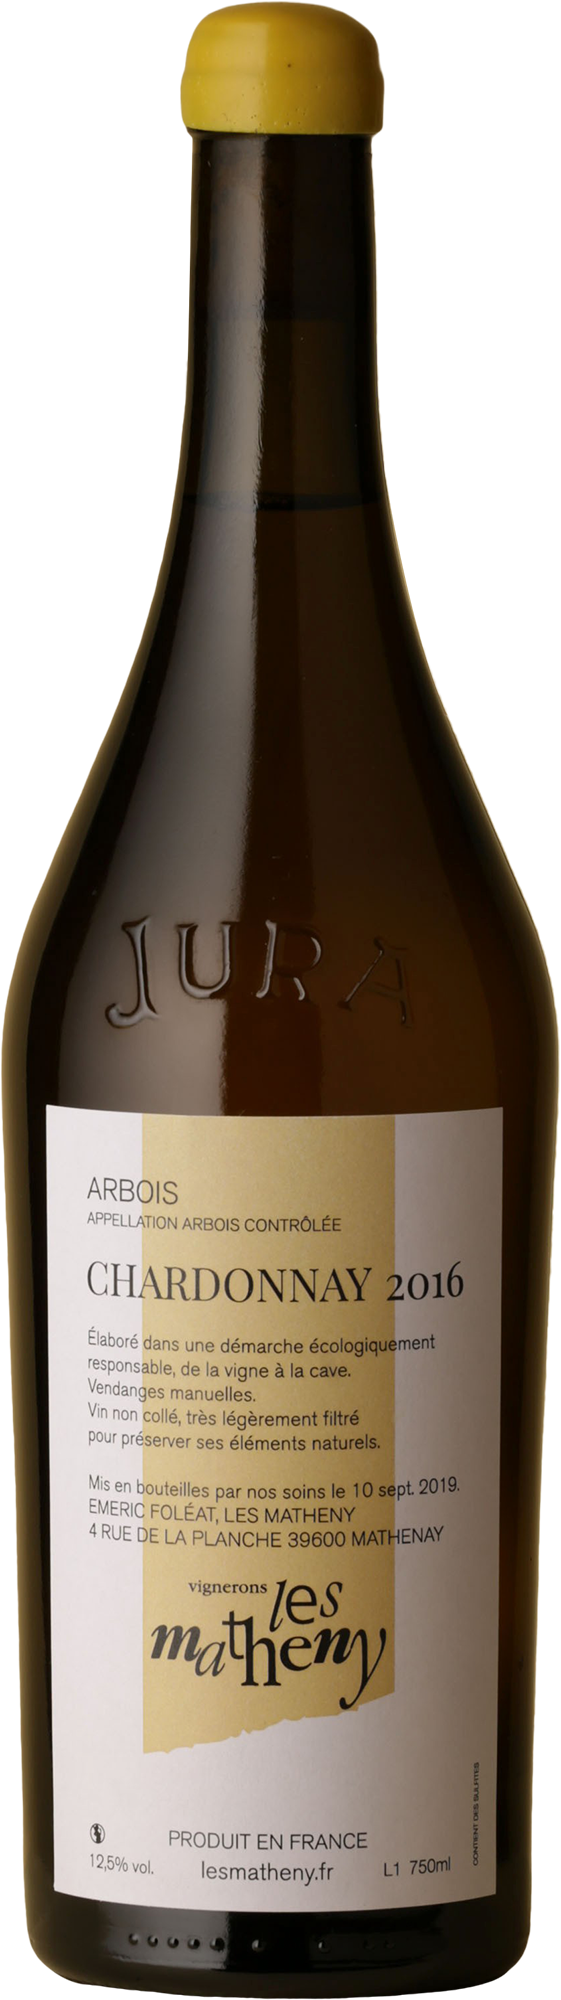 Les Matheny - Cotes Du Jura Chardonnay 2016 White Wine